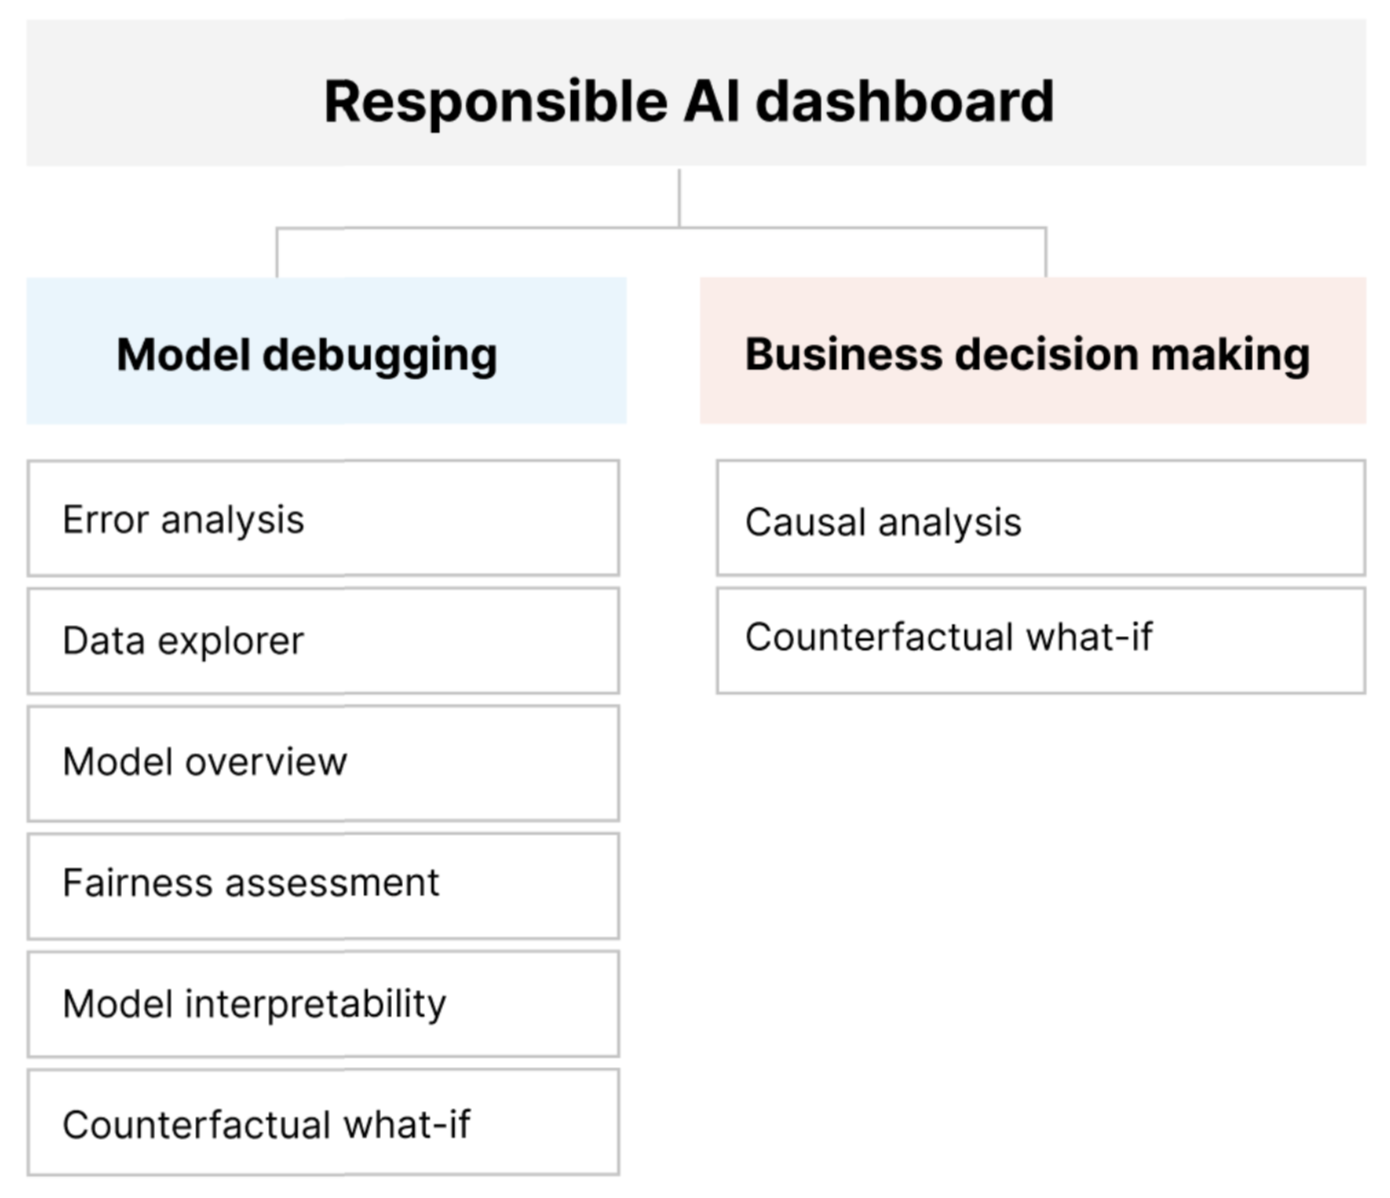 Diagrama de los componentes del panel de IA responsable para la depuración de modelos y la toma de decisiones responsable.